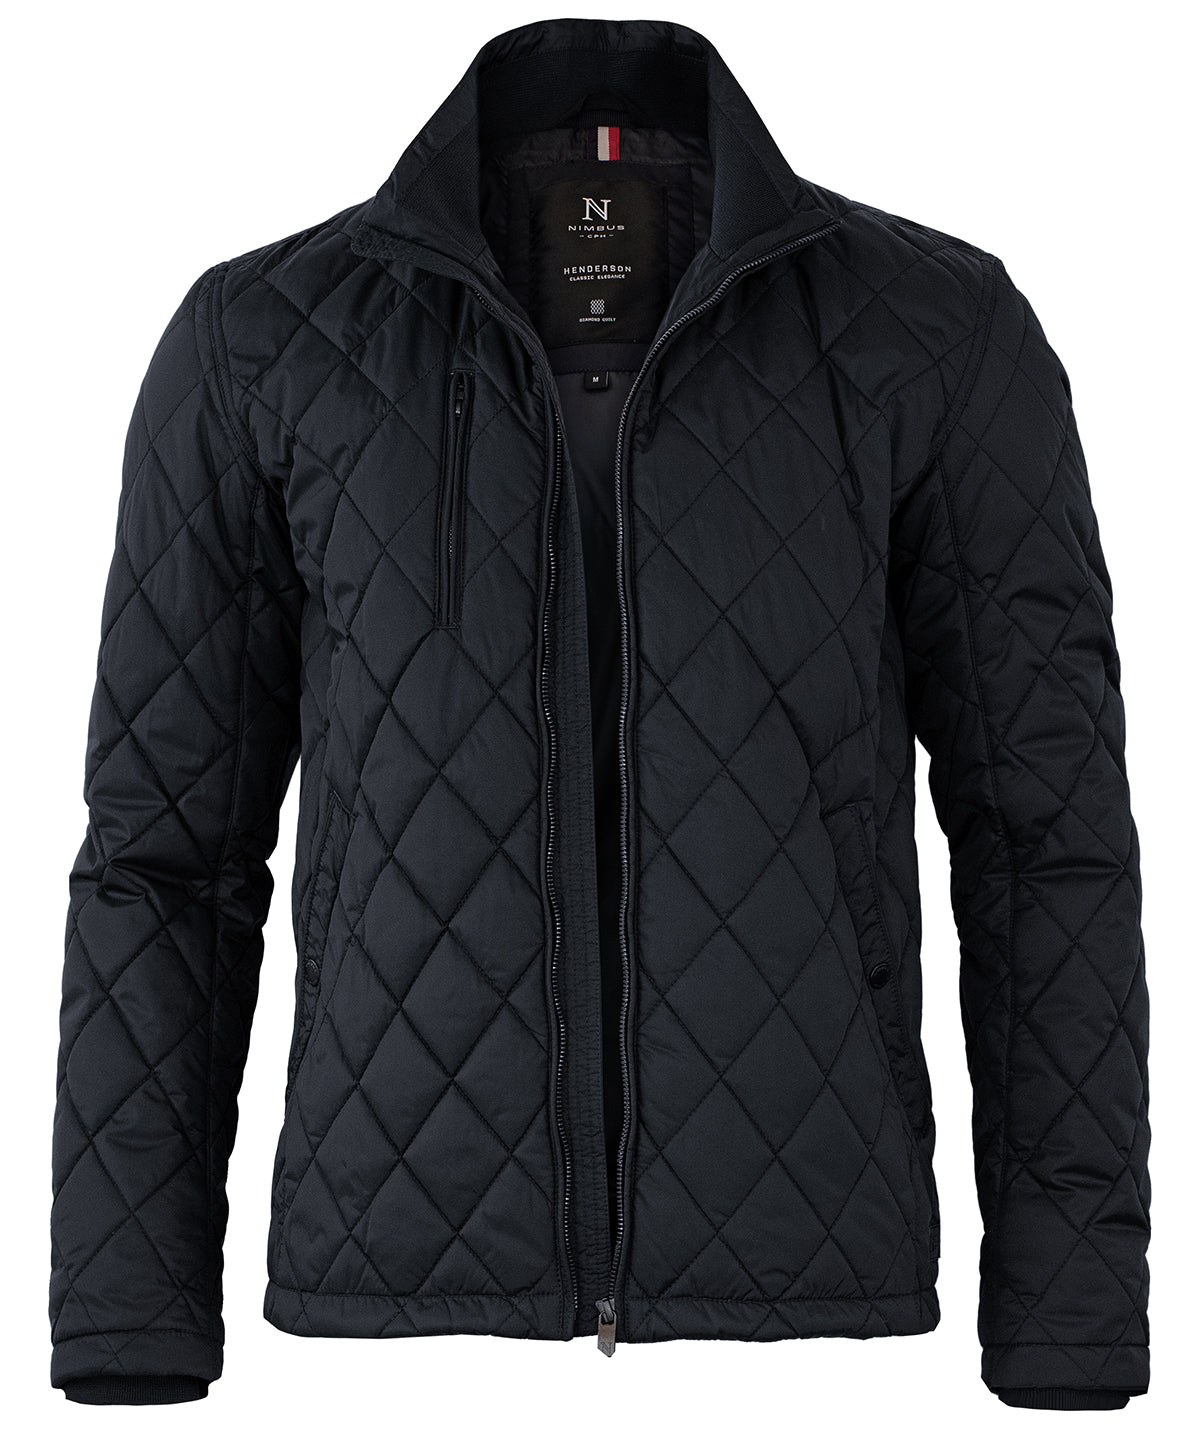 Personalised Jackets - Navy Nimbus Henderson – stylish diamond quilted jacket